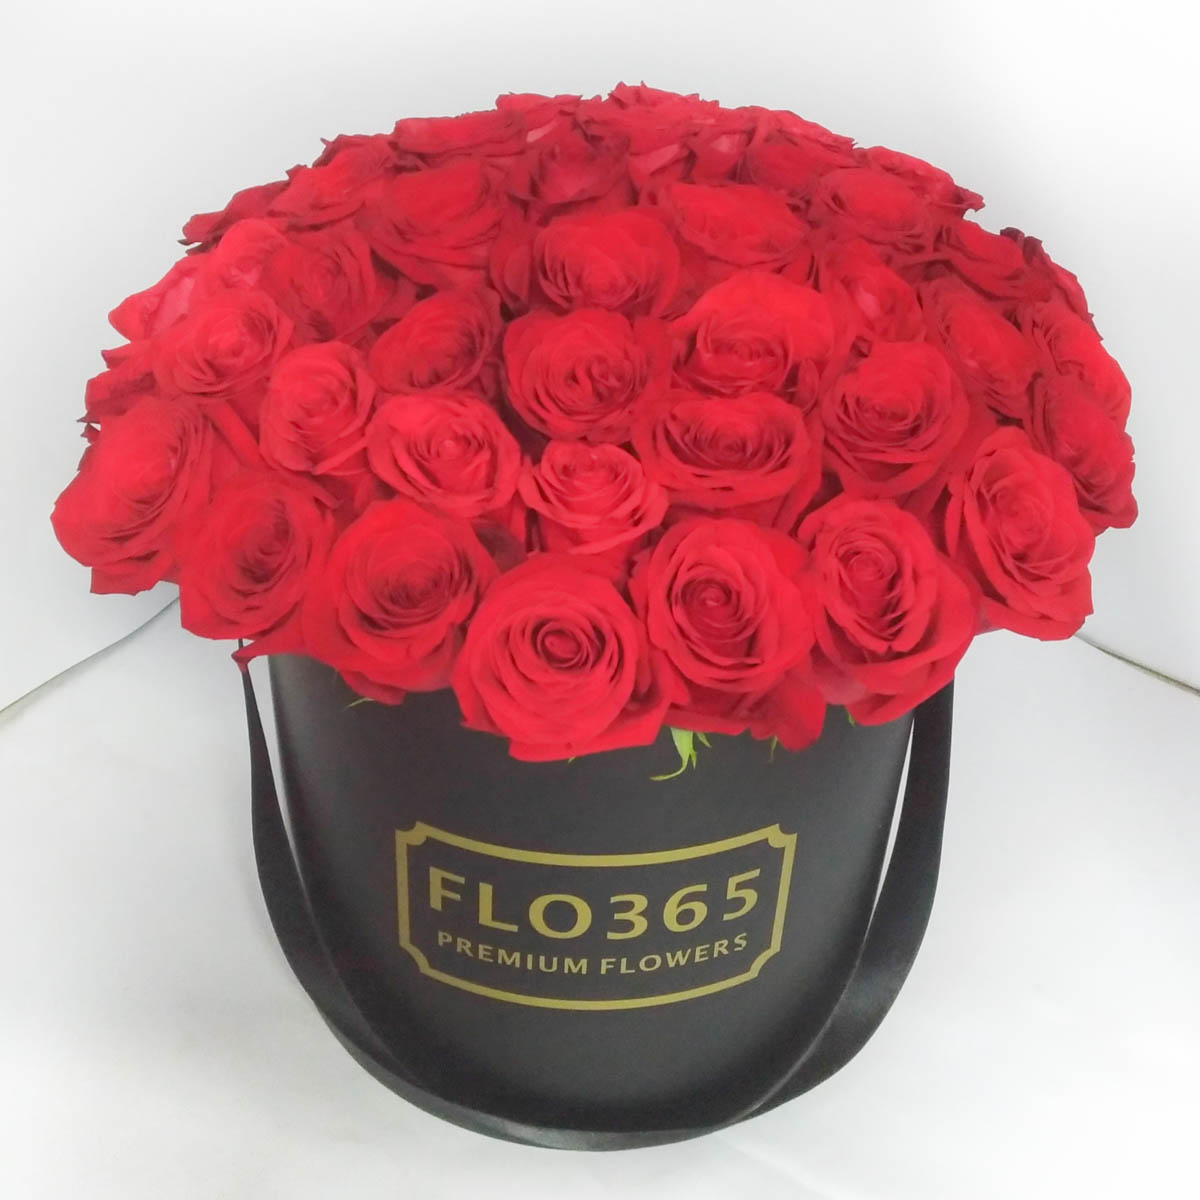 LUXURY! 51 красная роза в шляпной коробке - Фотография цветов перед доставкой